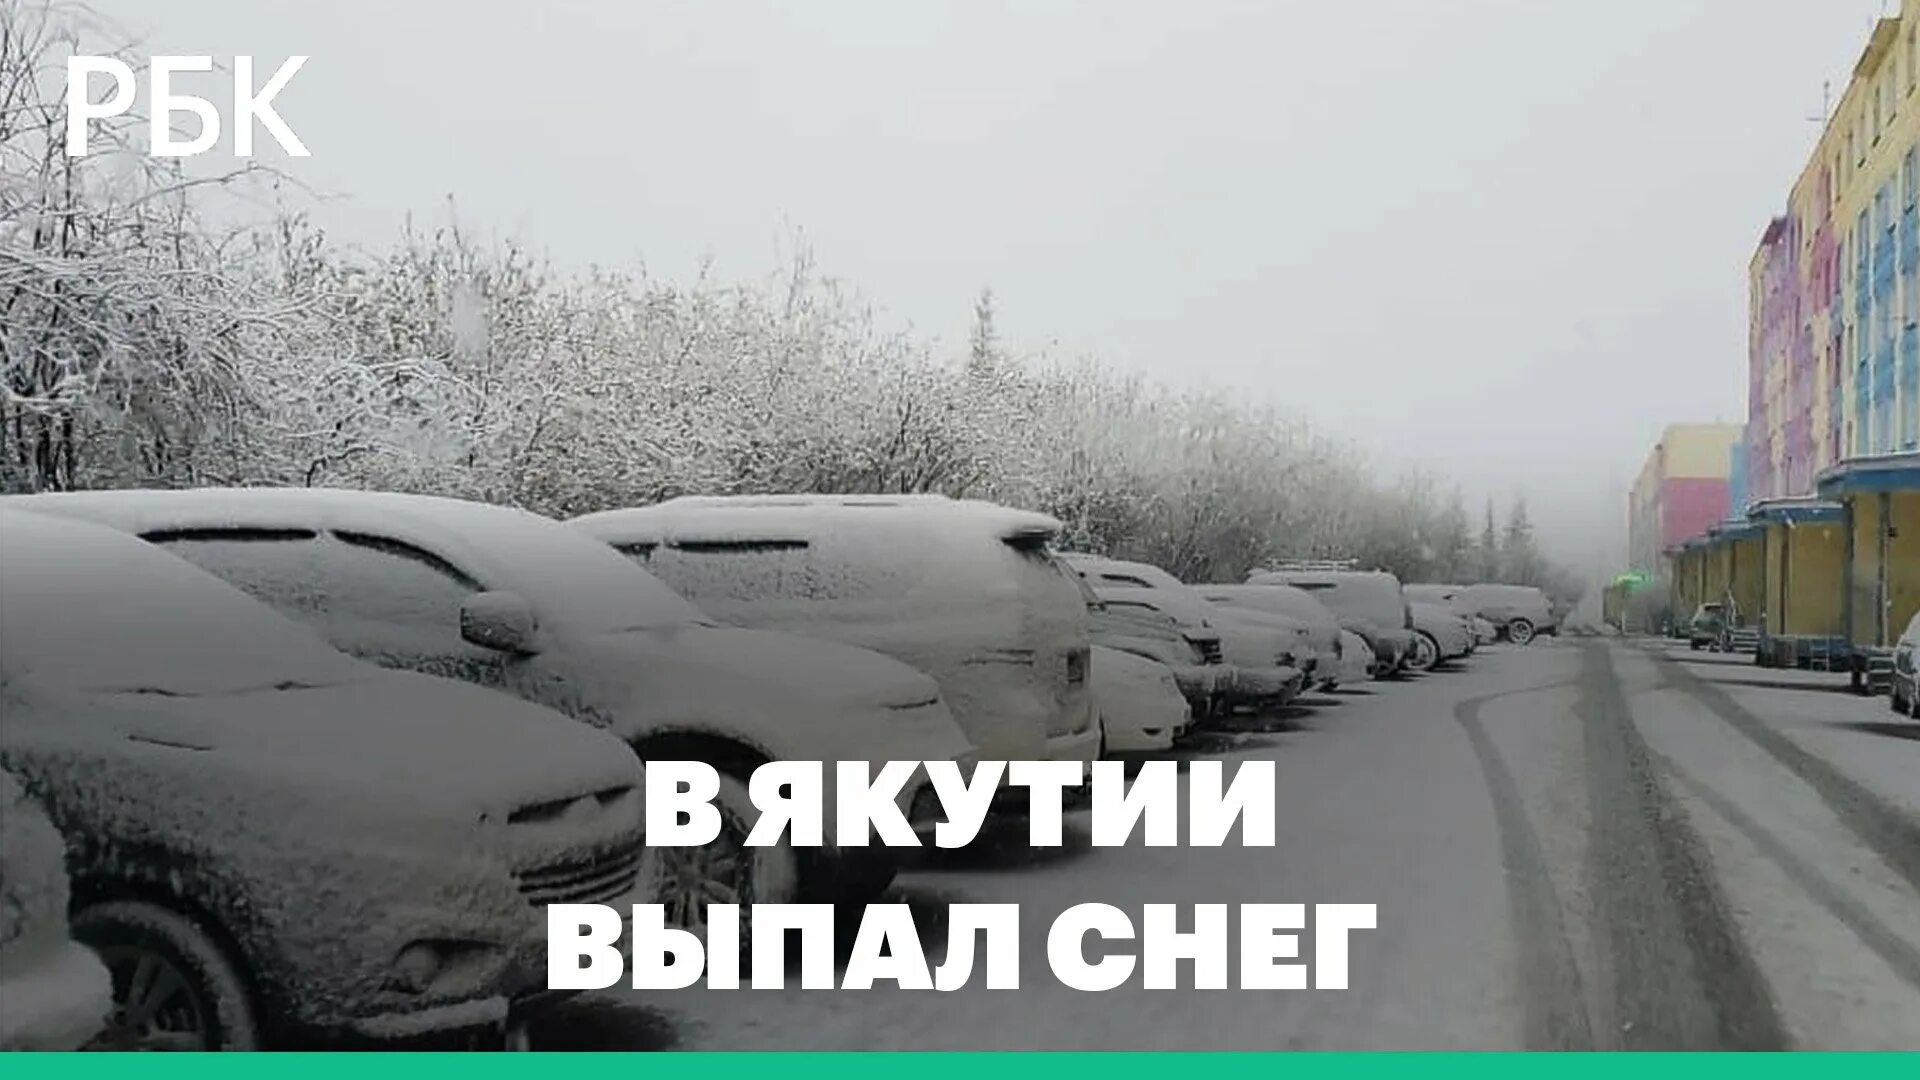 Якутия снег. Сугробы в Якутии. Снегопад в городе. Снег в июне. Снег выпавший ночью и еще не изборожденный